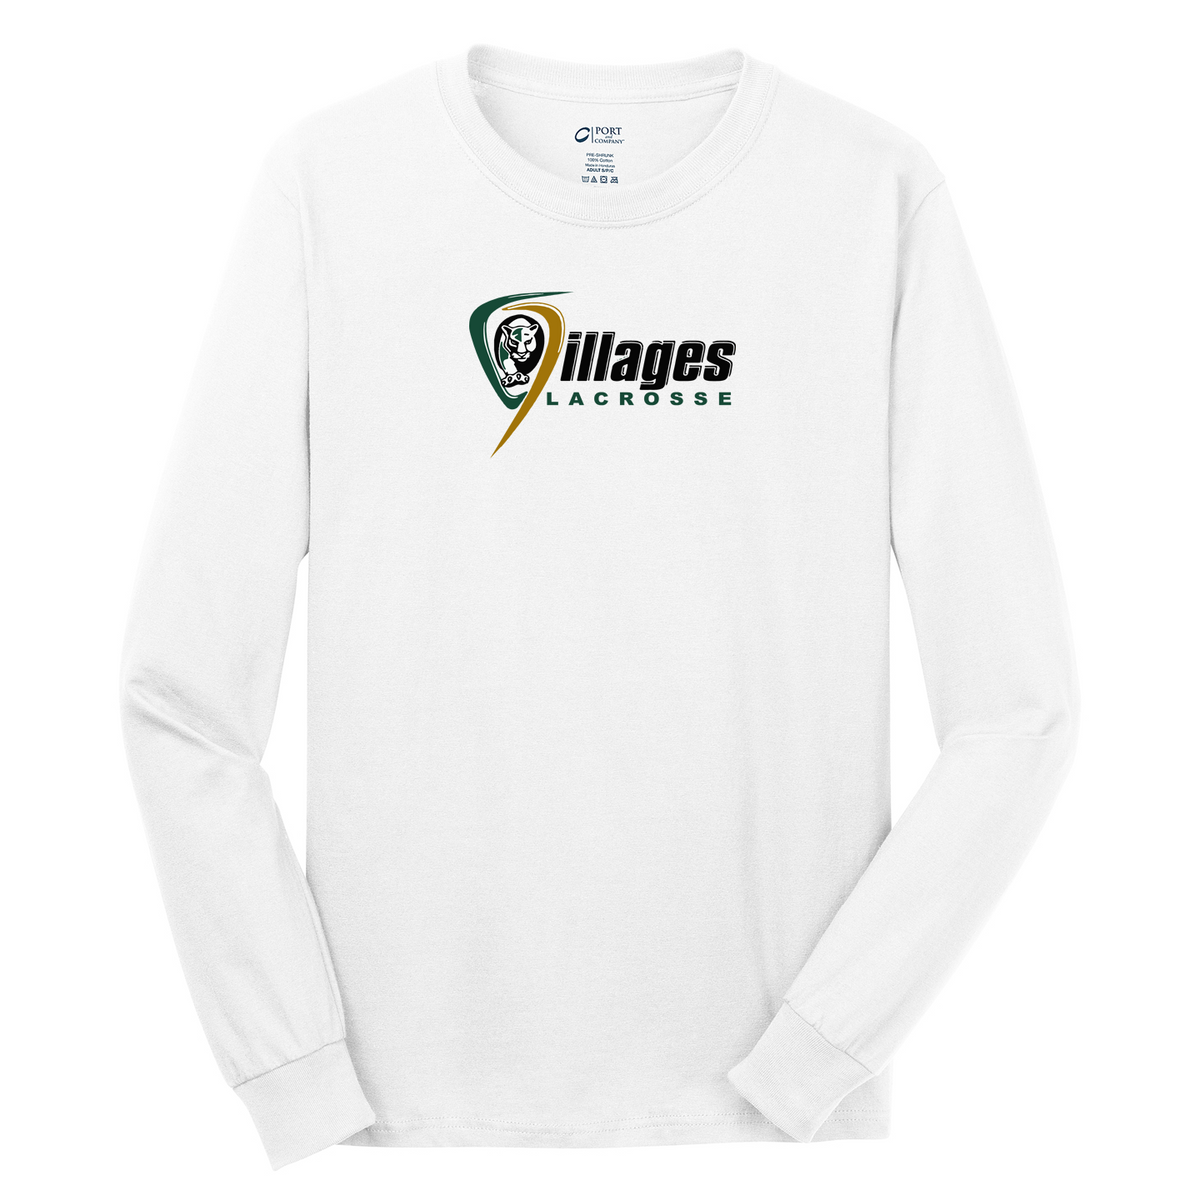 Villages Lacrosse Cotton Long Sleeve Shirt